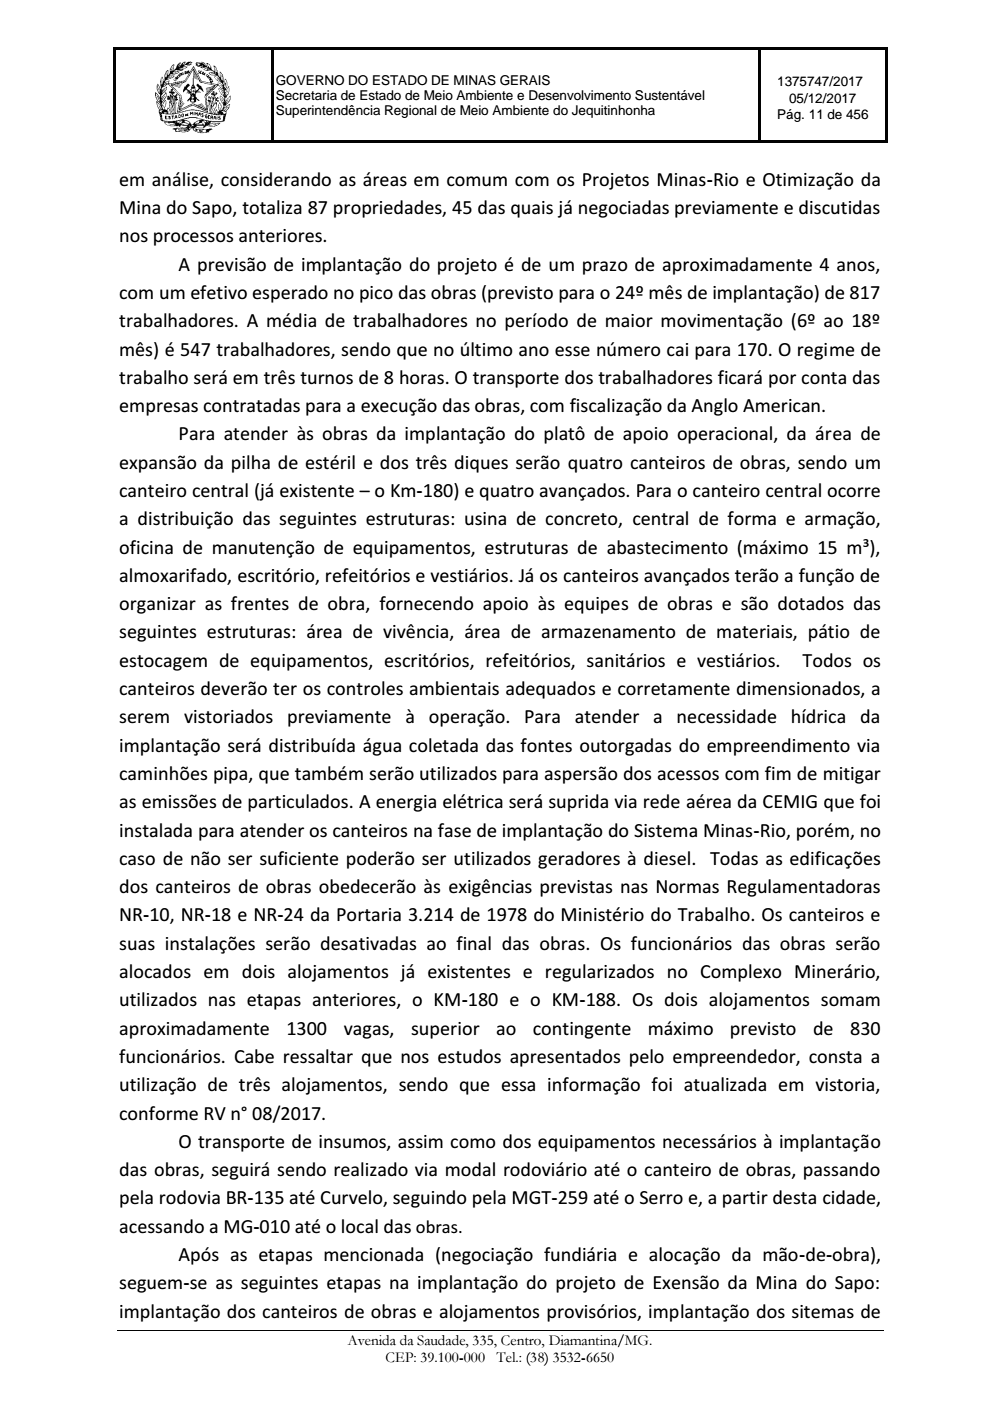 Page 11 from Parecer único da Secretaria de estado de Meio Ambiente e Desenvolvimento Sustentável (SEMAD)